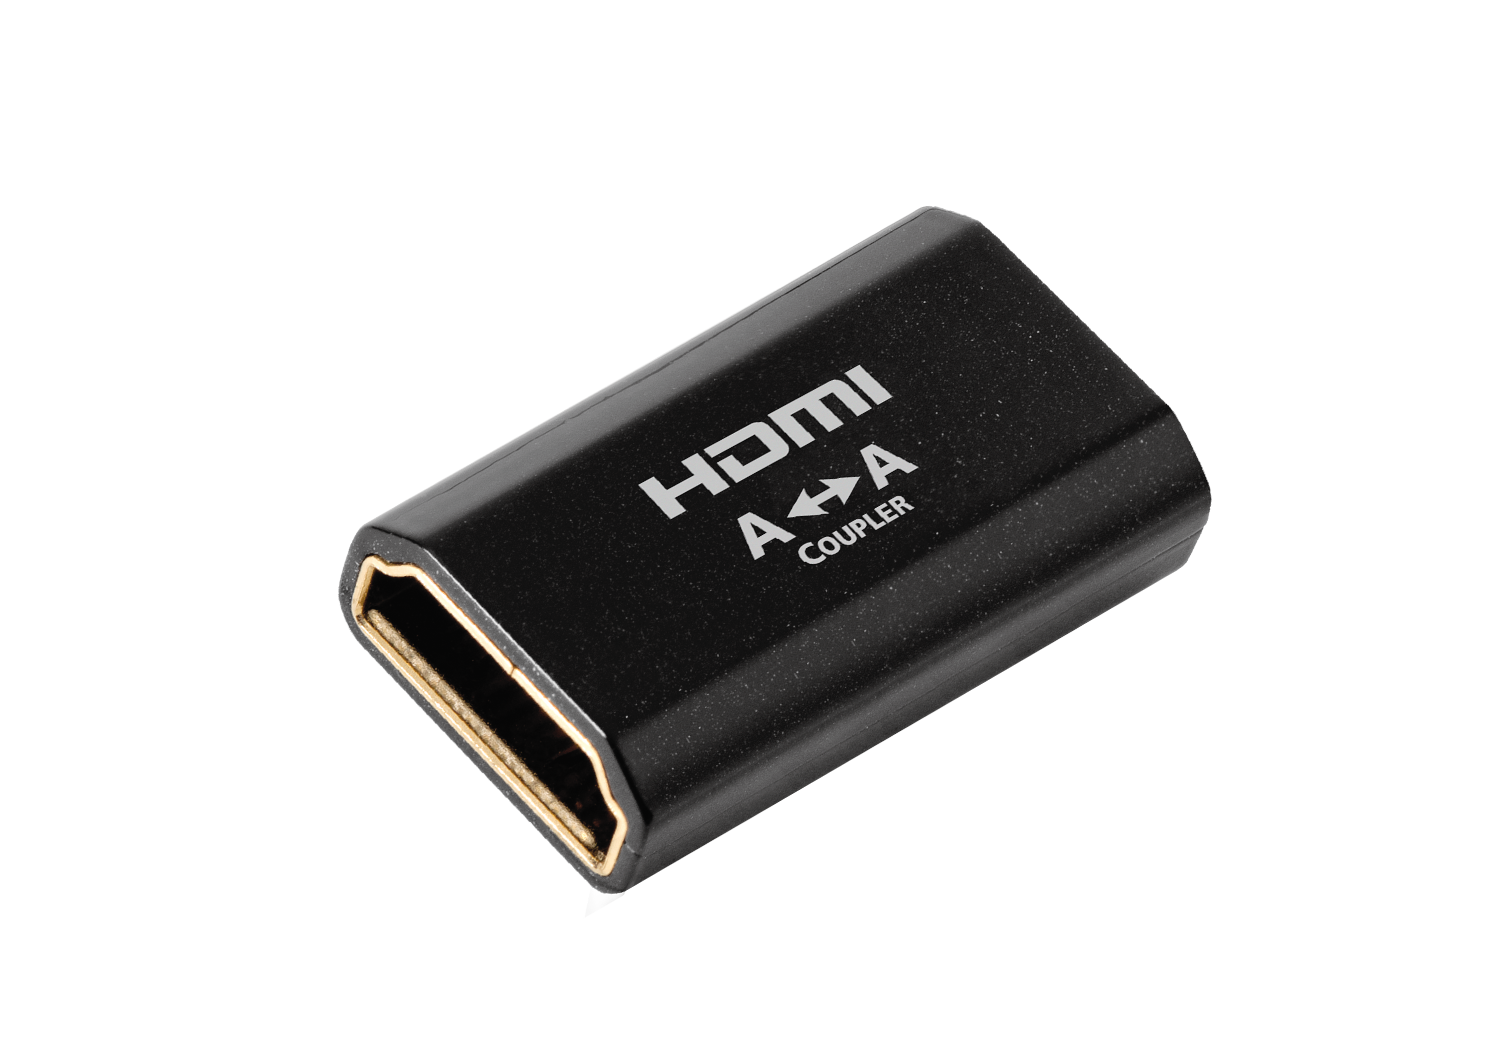 HDMI Coupler